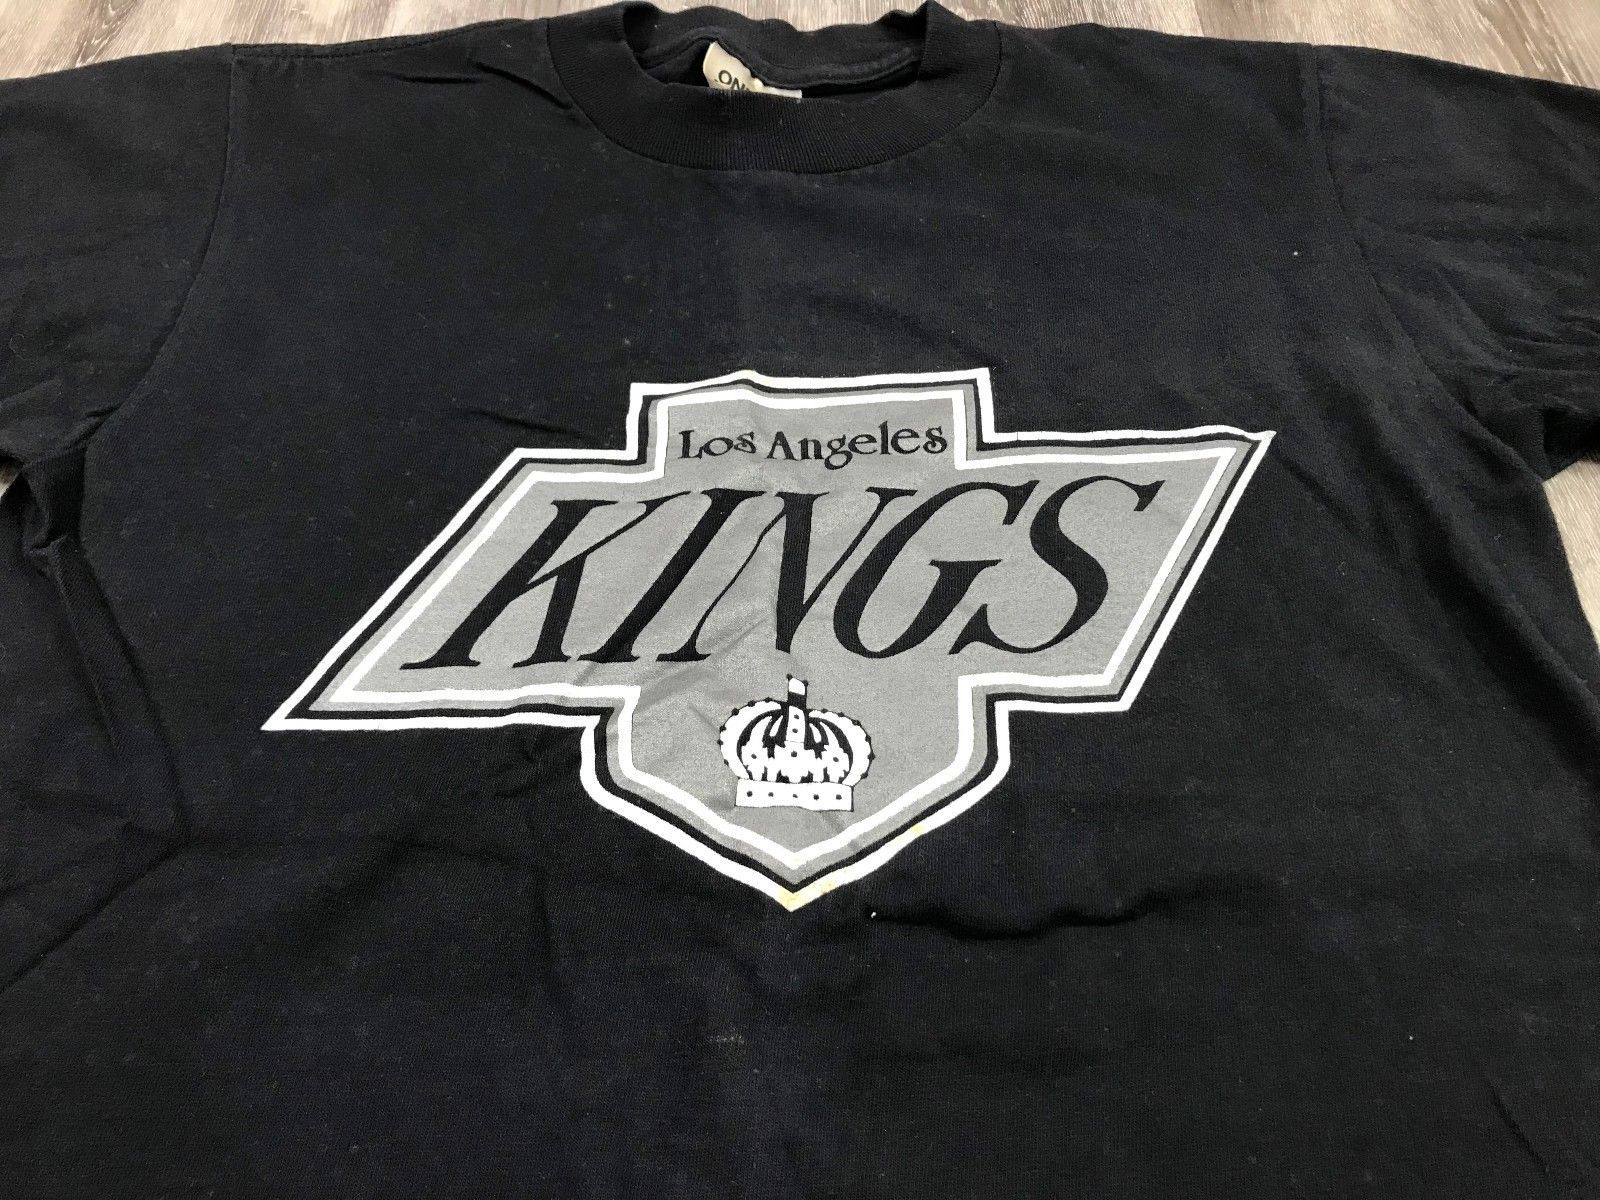 la kings t shirt